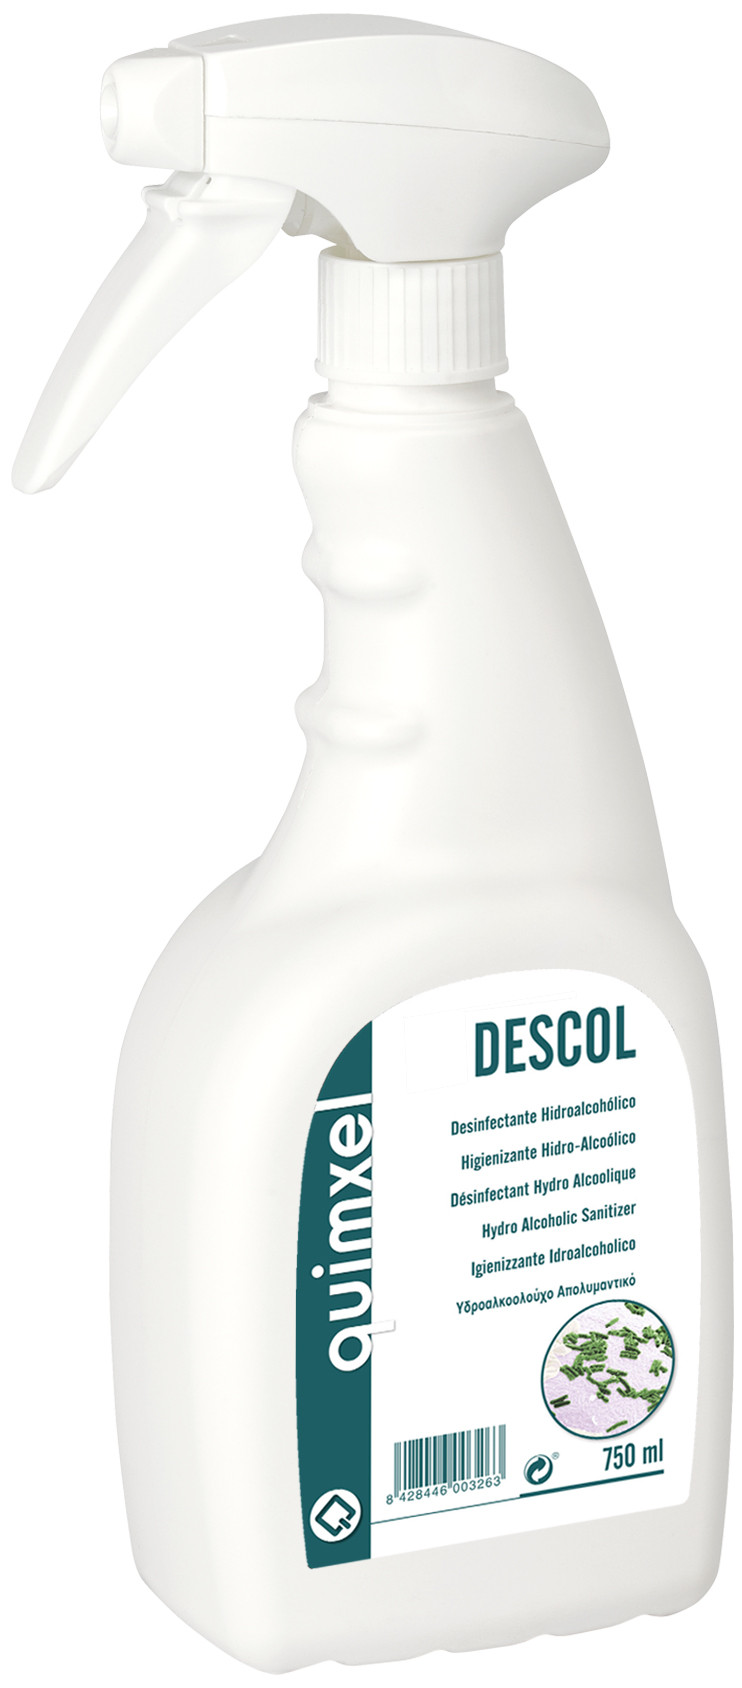 Desinfectante Hidroalcoholico, Descol 750ml, 5L y